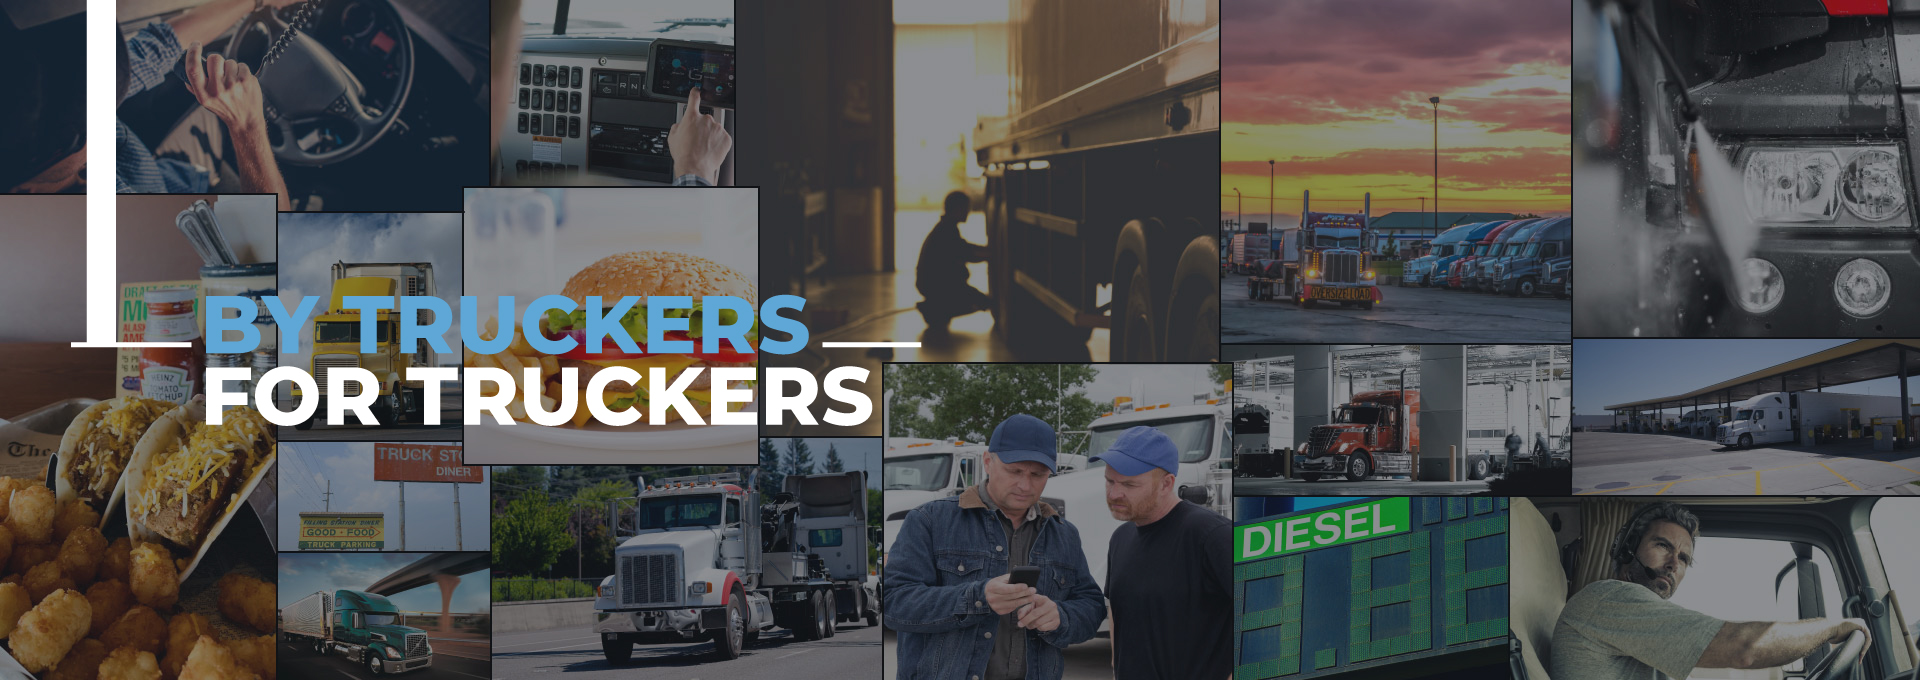 trucker advisor new header background